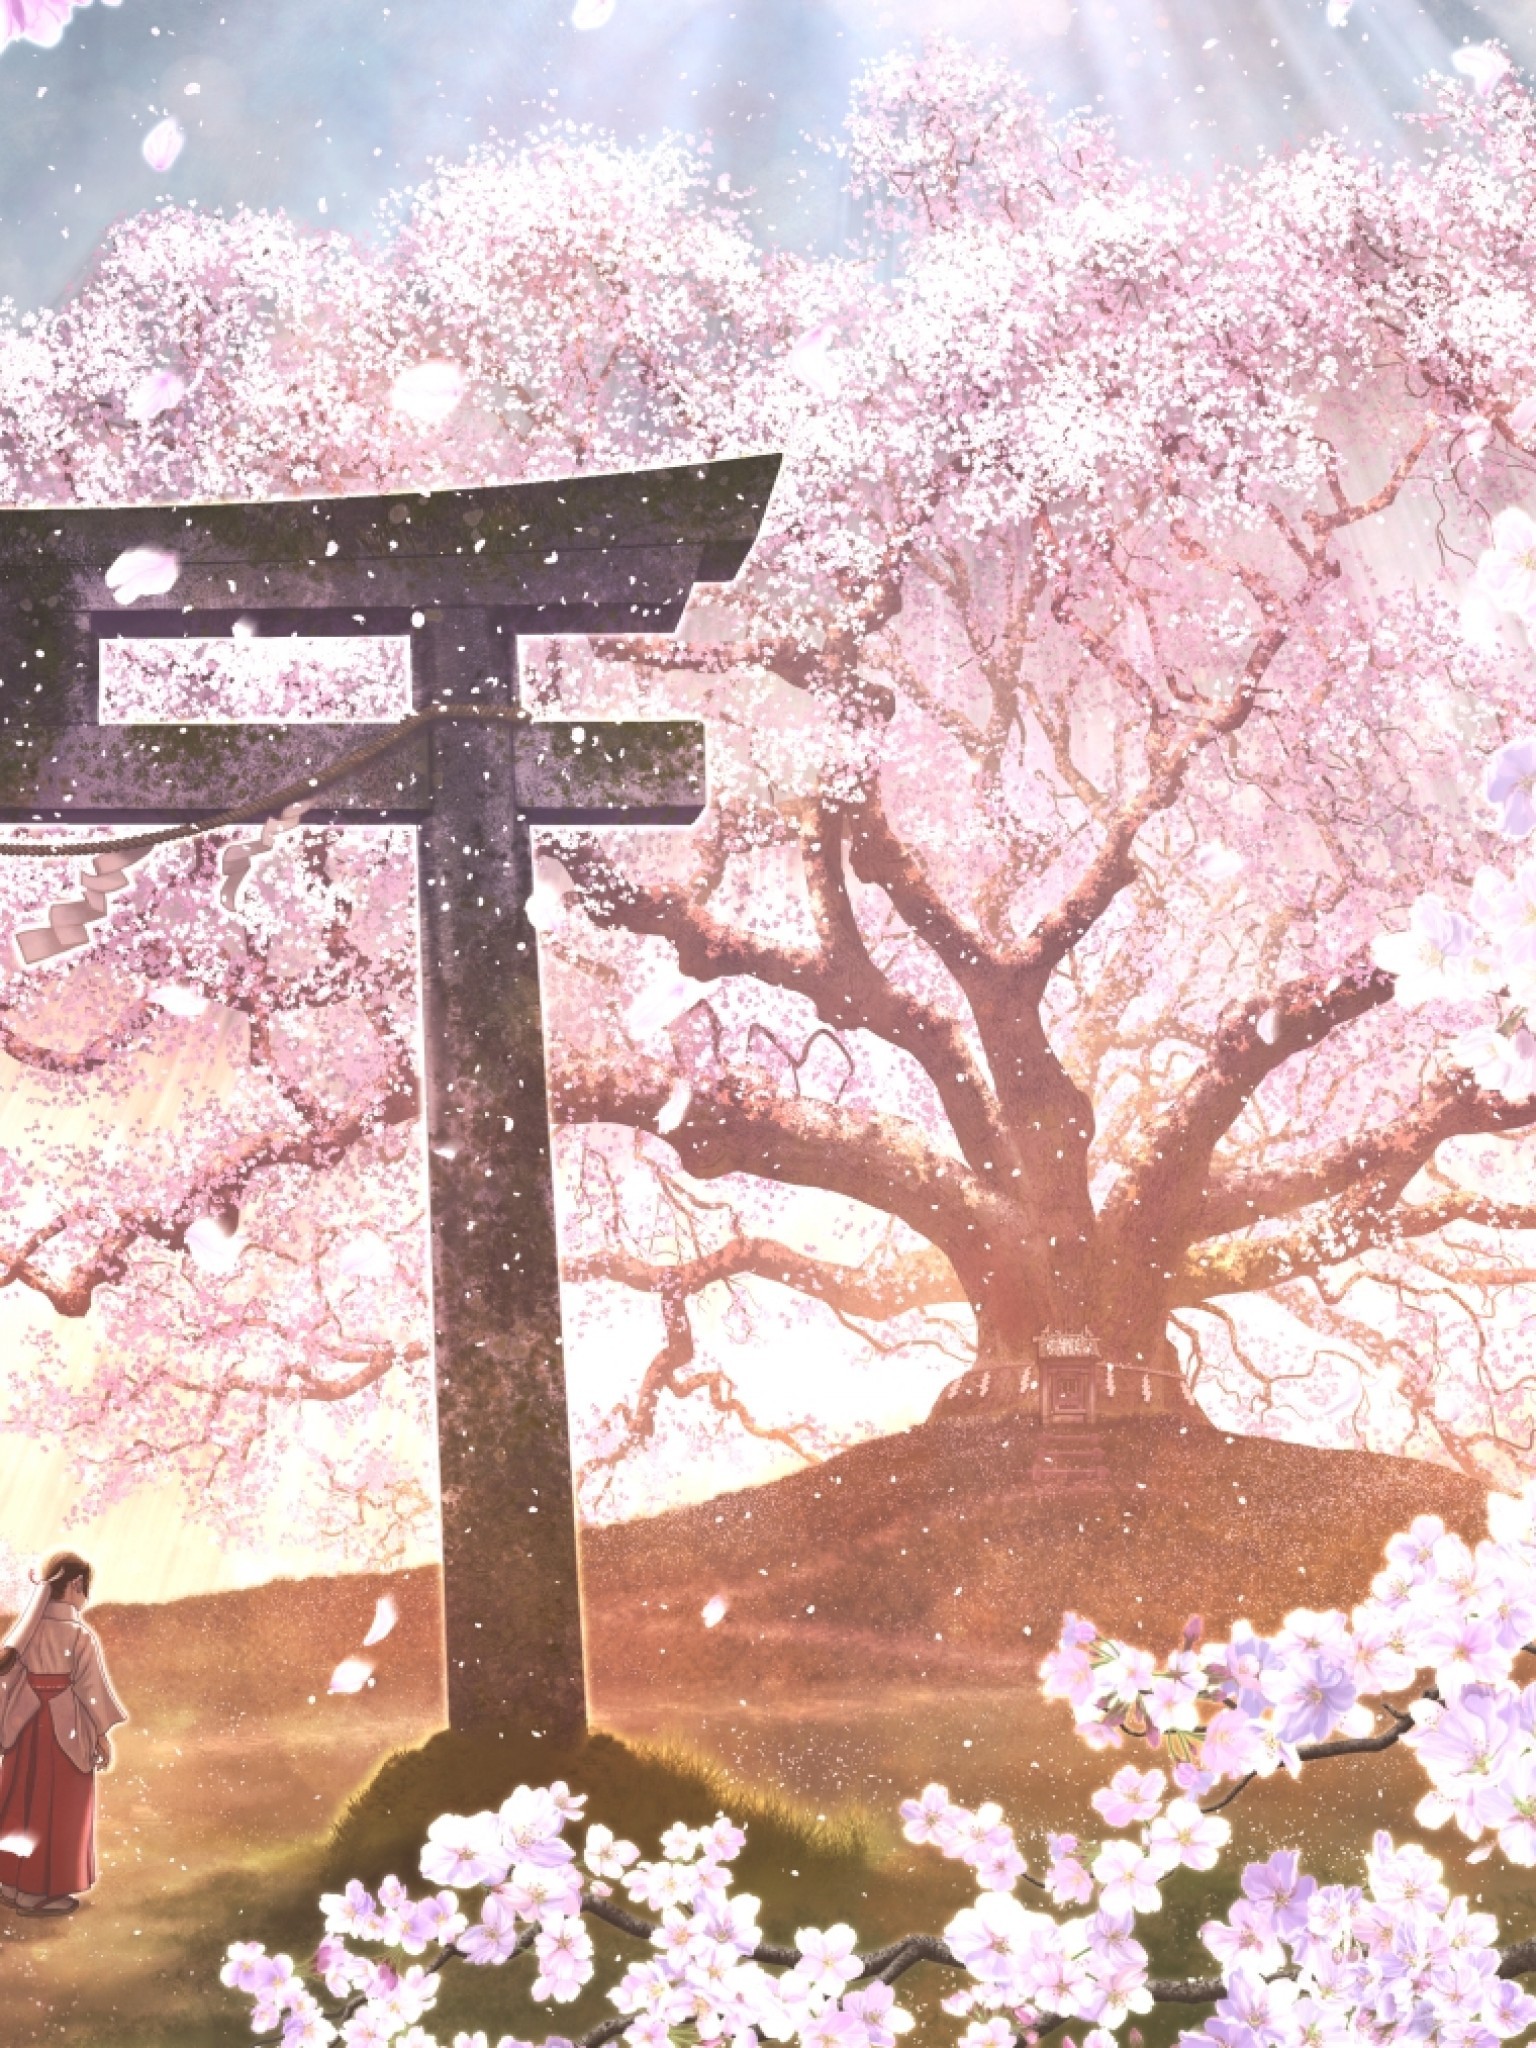 Sakura Blossom, Anime Landscape, Japanese Clothes - Japanese Cherry Blossom Anime - HD Wallpaper 